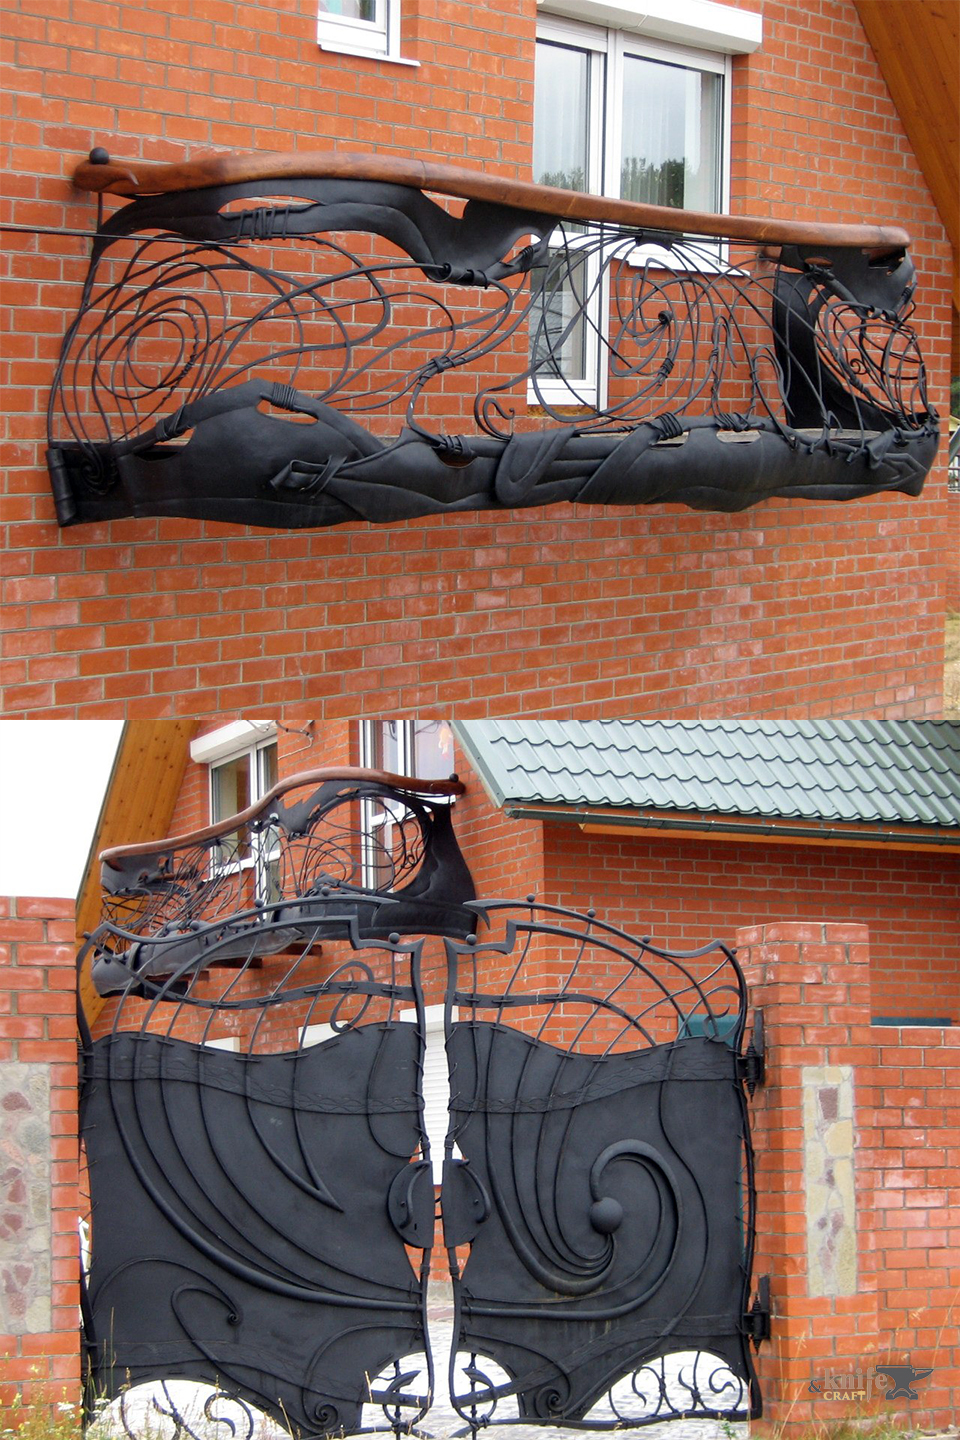 кованые металлические распашные ворота и перила-ограждения на балкон в частный дом купить (заказать) в Москве